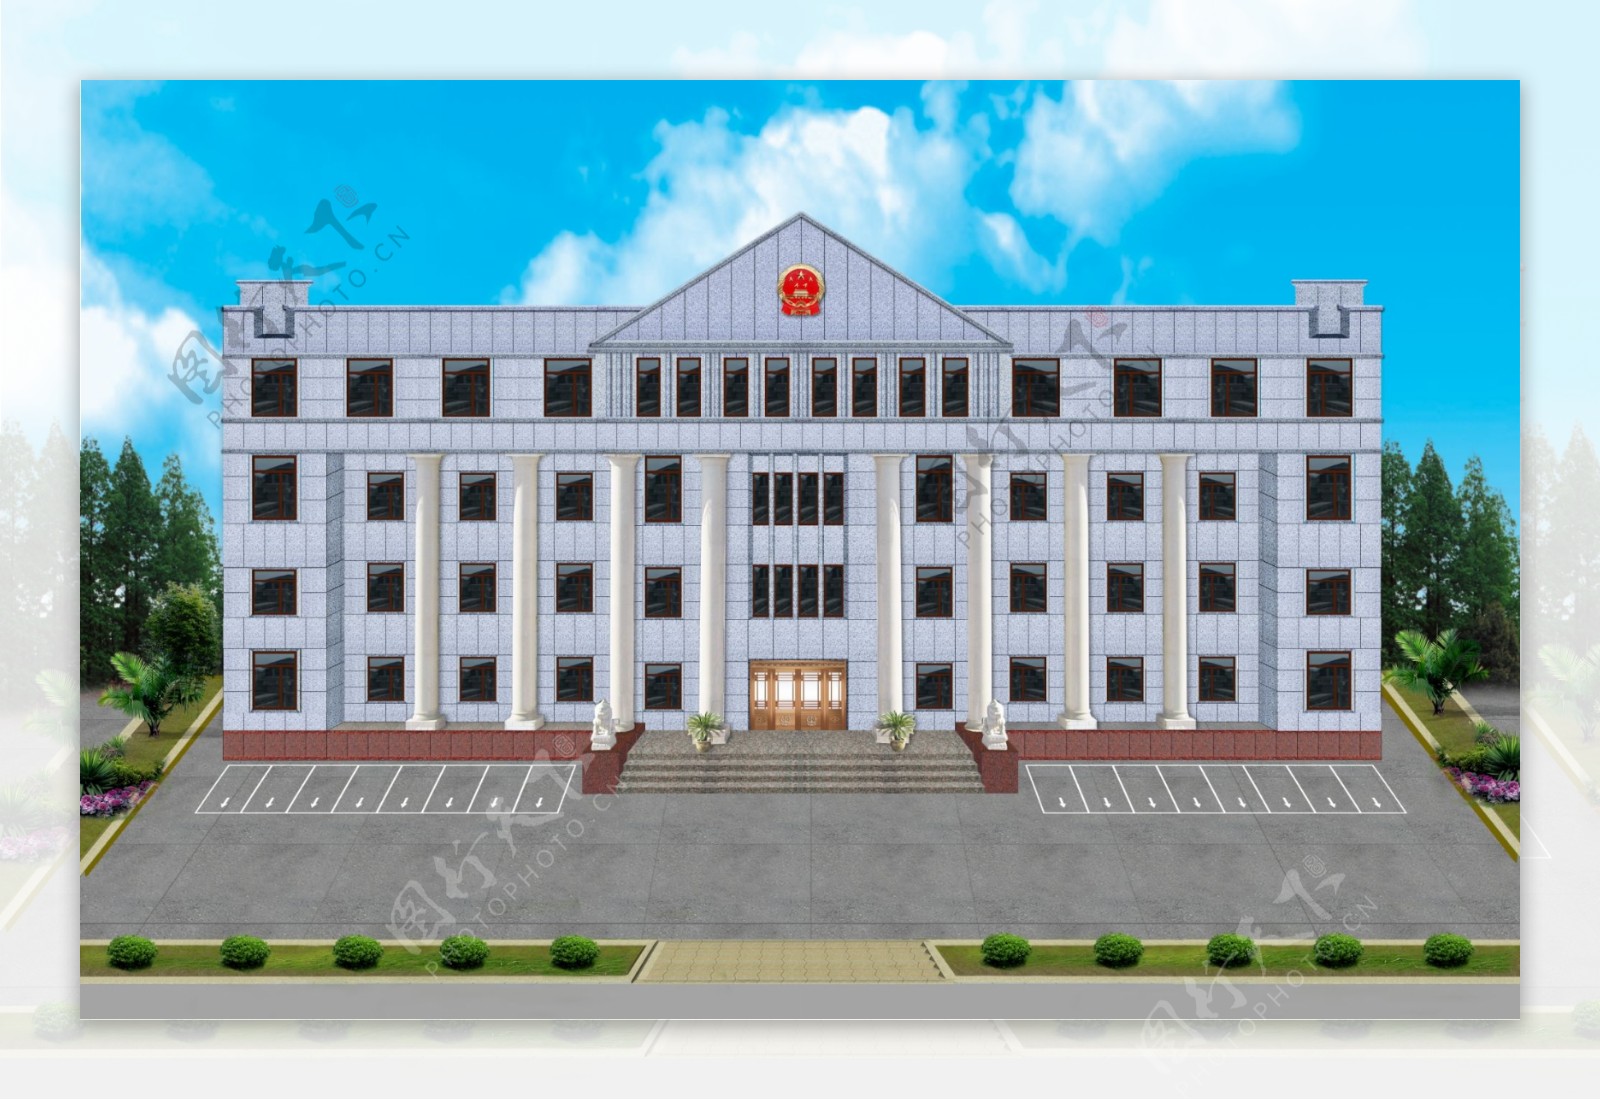 北京市第三中级人民法院 - 北京弘高创意建筑设计股份有限公司官方网站